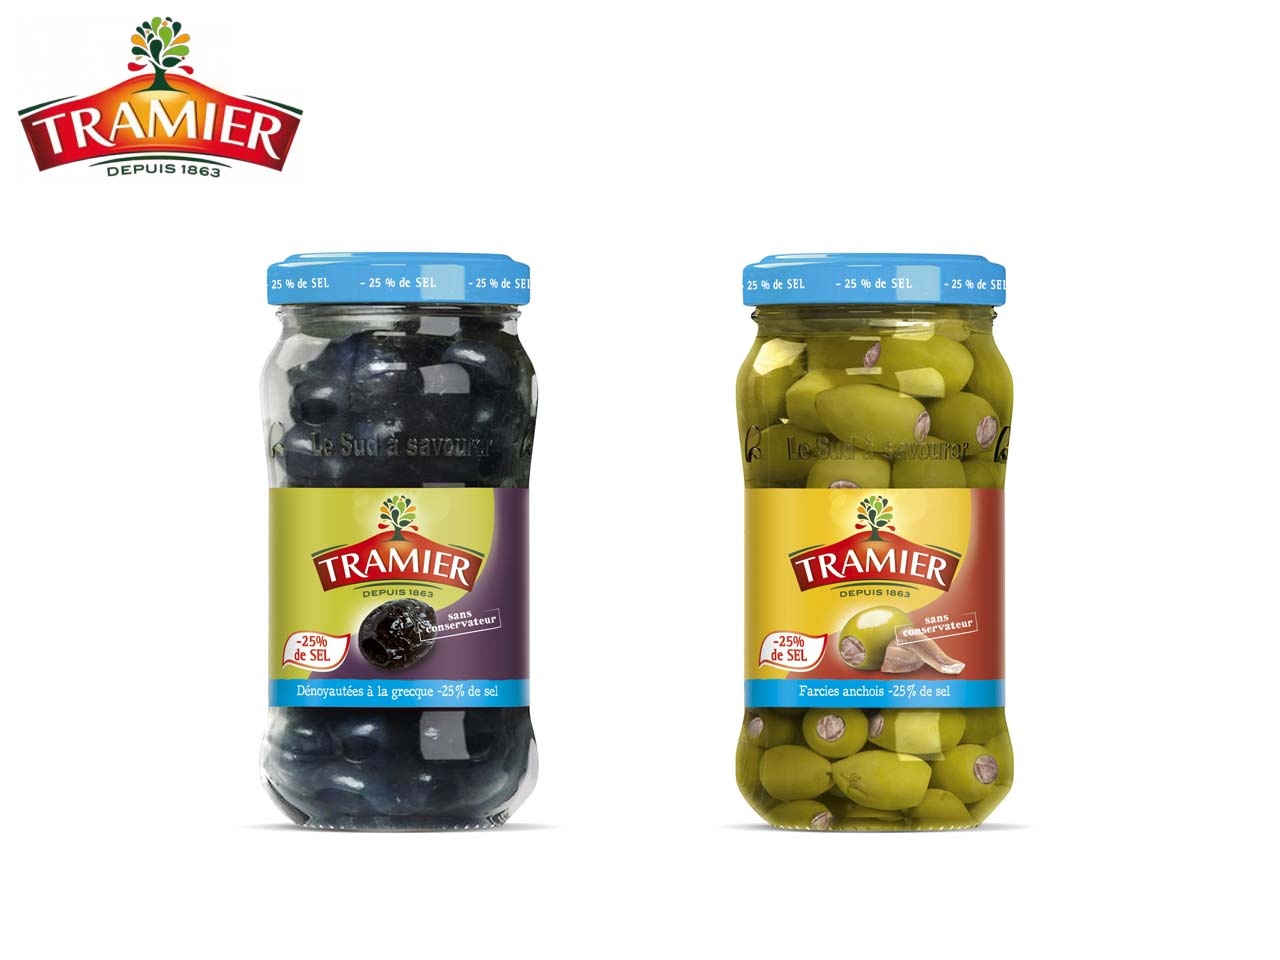 Tramier présente ses olives, moins salées et toujours aussi gourmandes !